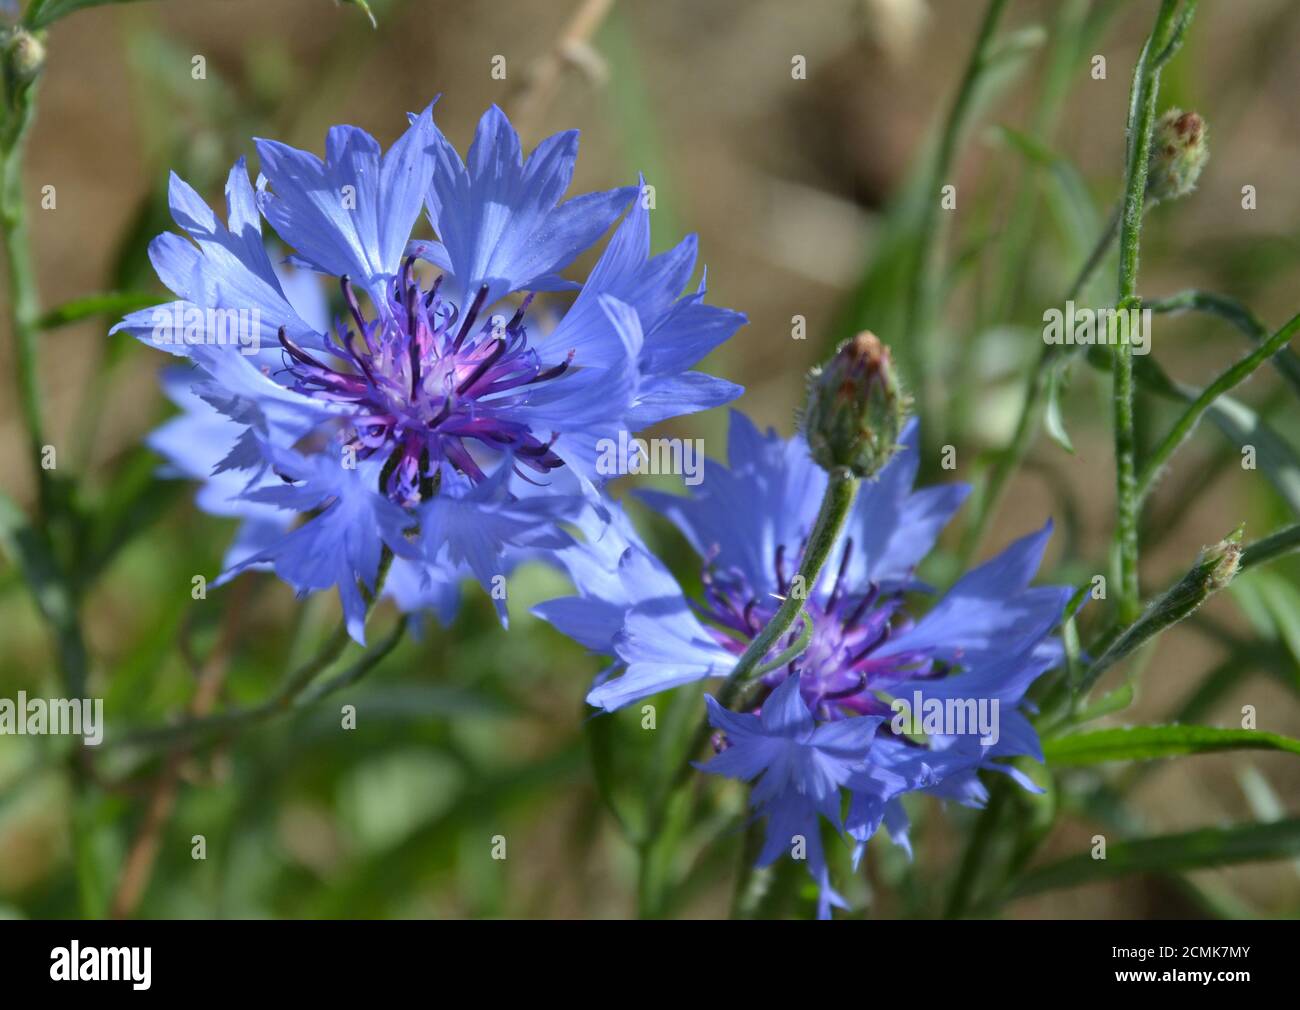 garden flowers growing in the UK Stock Photo